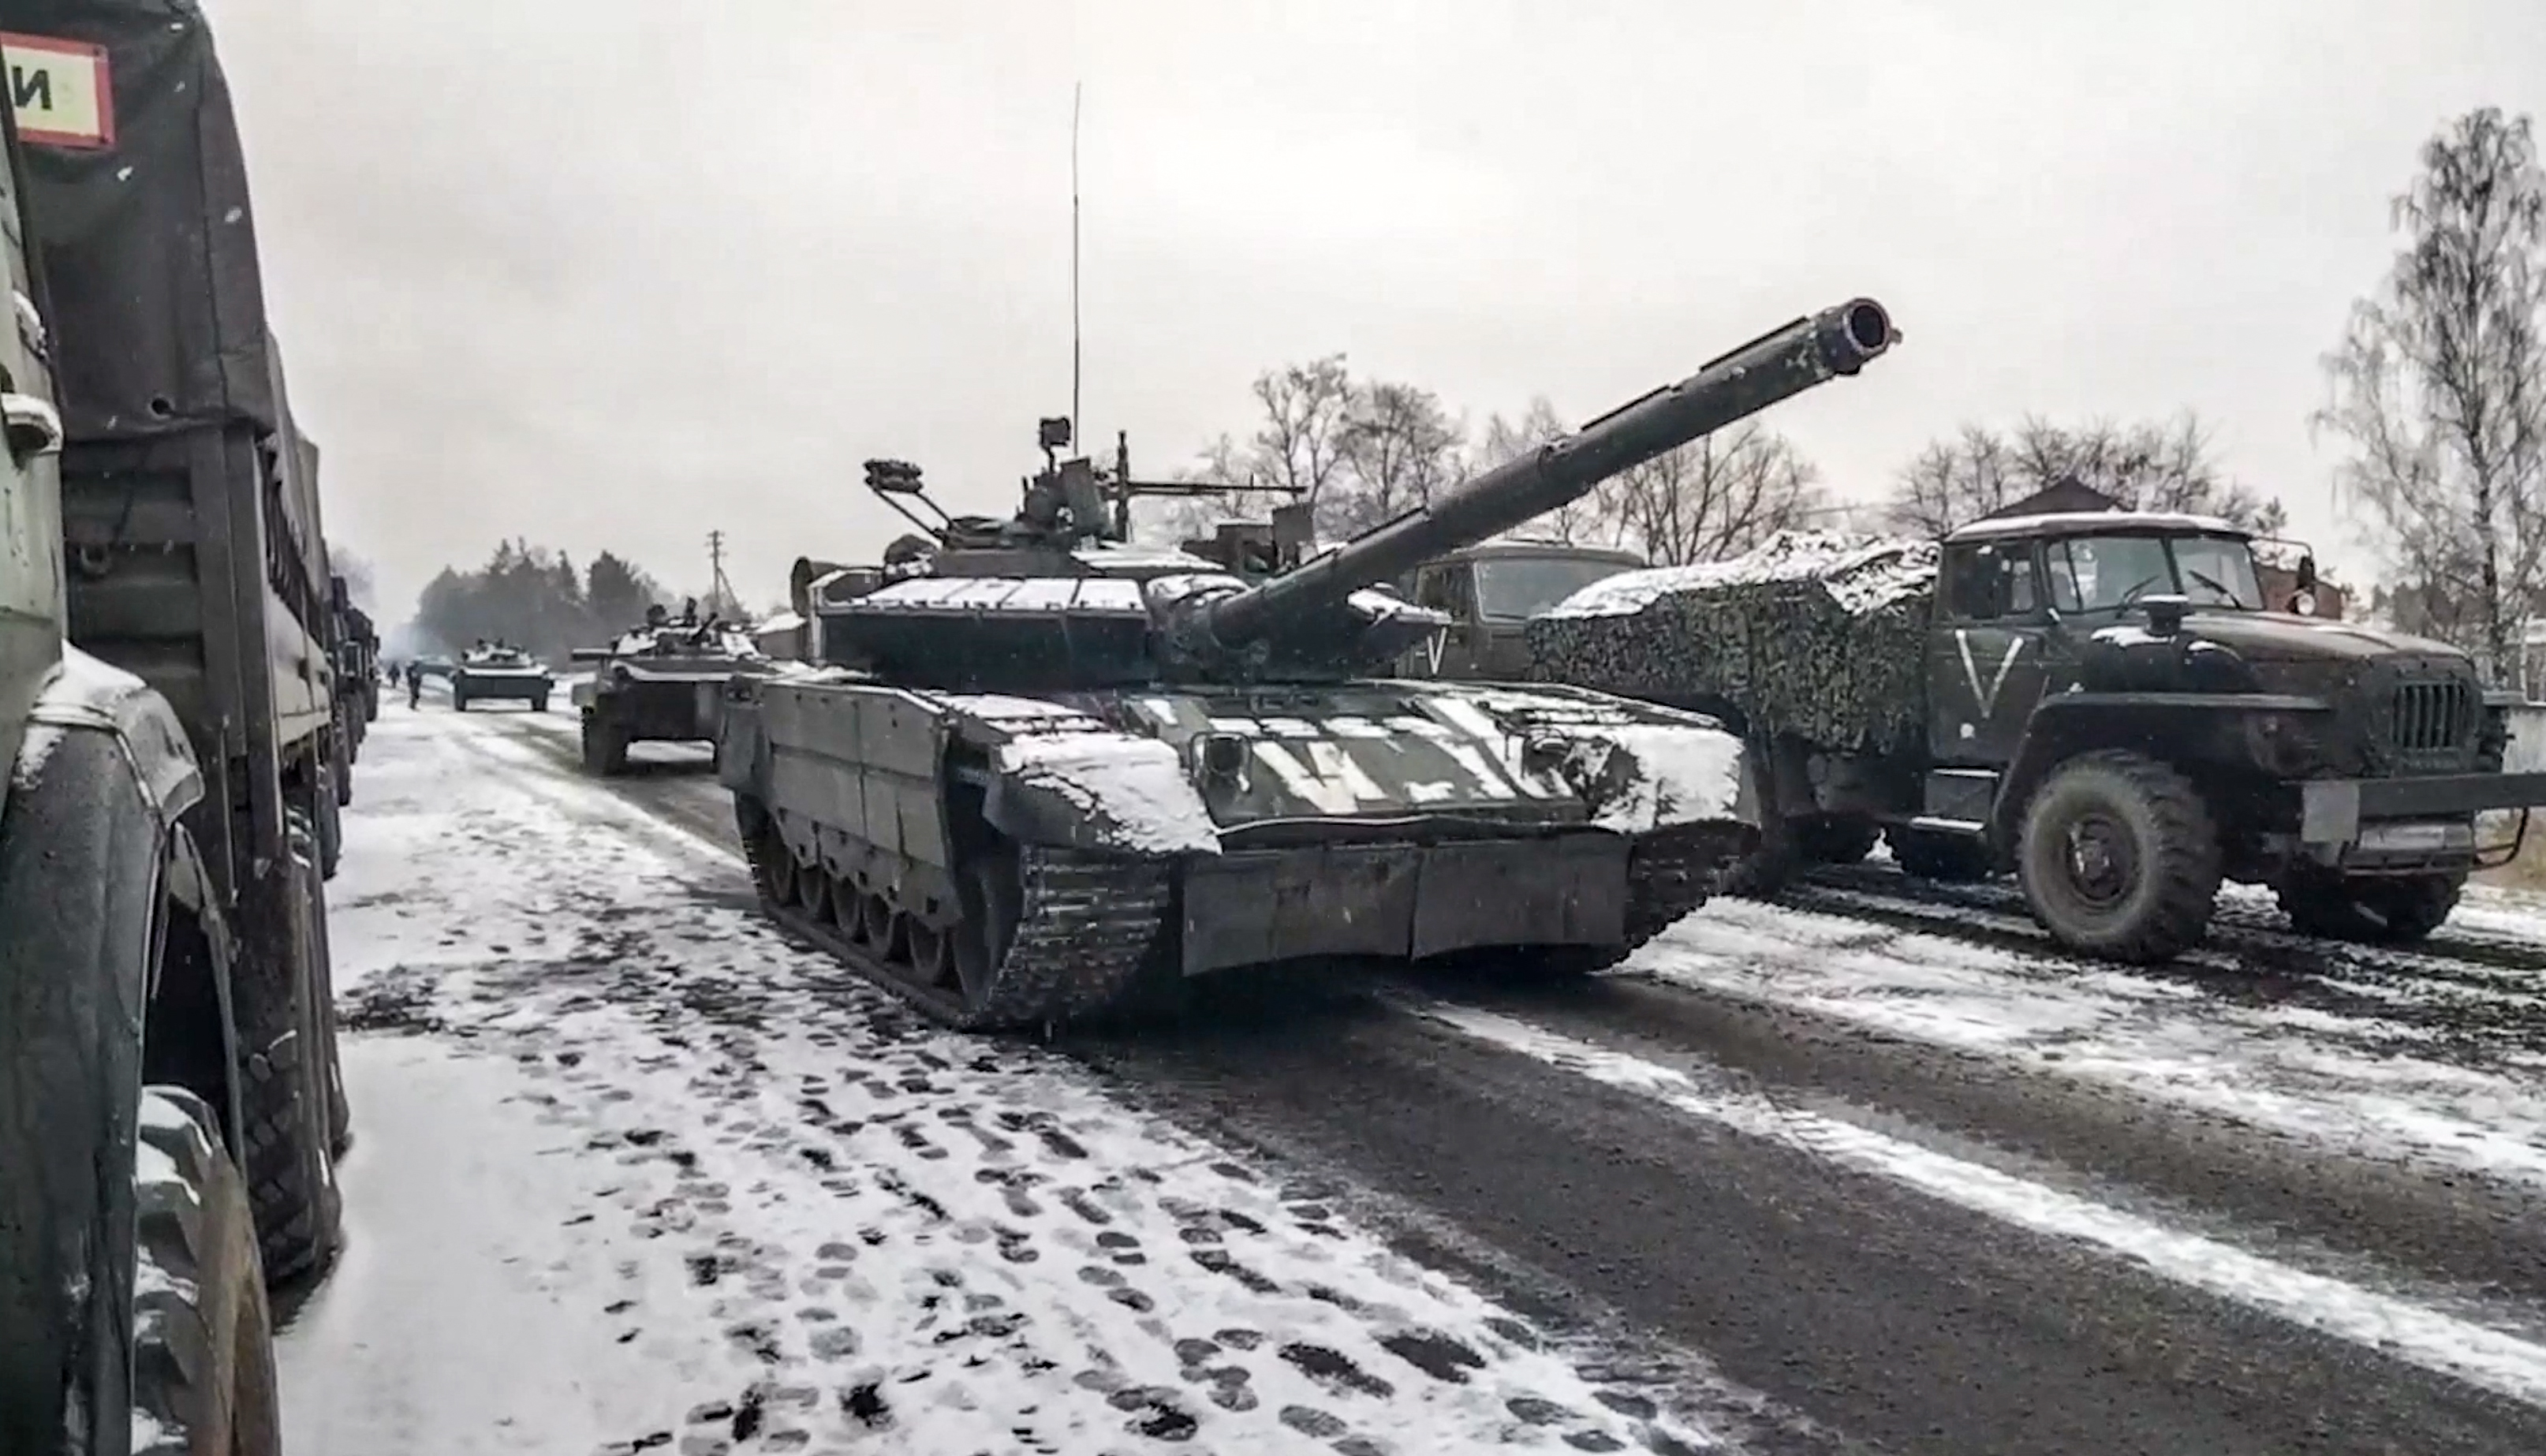 Nyugati szakértők visszaigazolták, hogy lázadó orosz katonák tankkal taposhattak el egy kegyetlen orosz parancsnokot